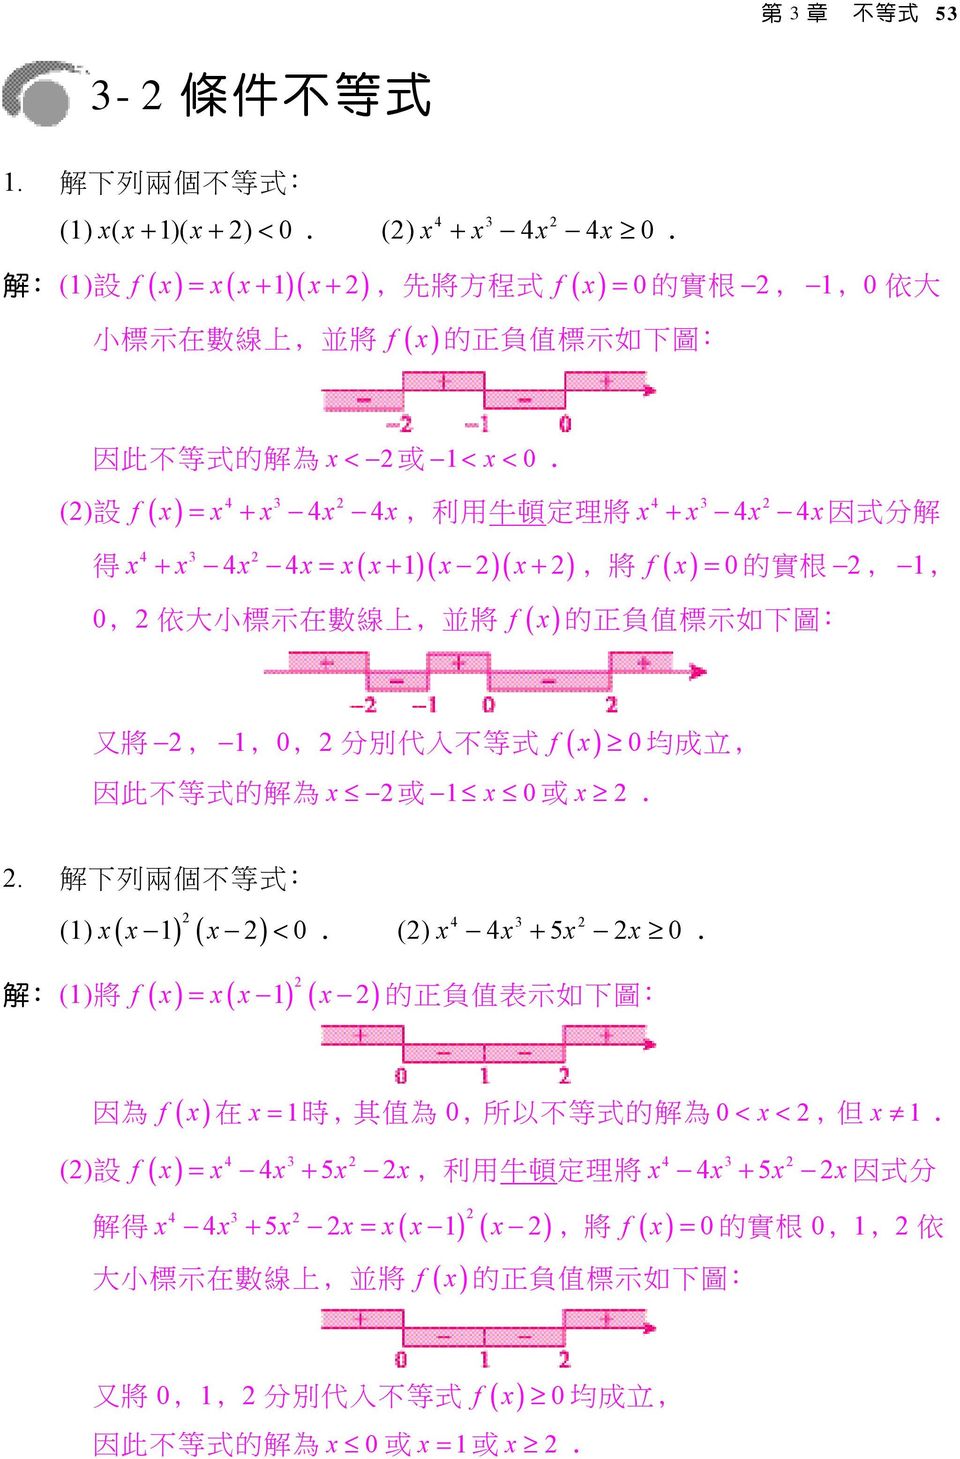 () 設 ( ) = +, 利 用 牛 頓 定 理 將 x + x x x因 式 分 解 f x x x x x 得 x + x x x= x( x+ )( x )( x+ ), 將 ( ) 0 f x = 的 實 根,, 0, 依 大 小 標 示 在 數 線 上, 並 將 f ( x ) 的 正 負 值 標 示 如 下 圖 : 又 將,,0, 分 別 代 入 不 等 式 f ( x) 均 成